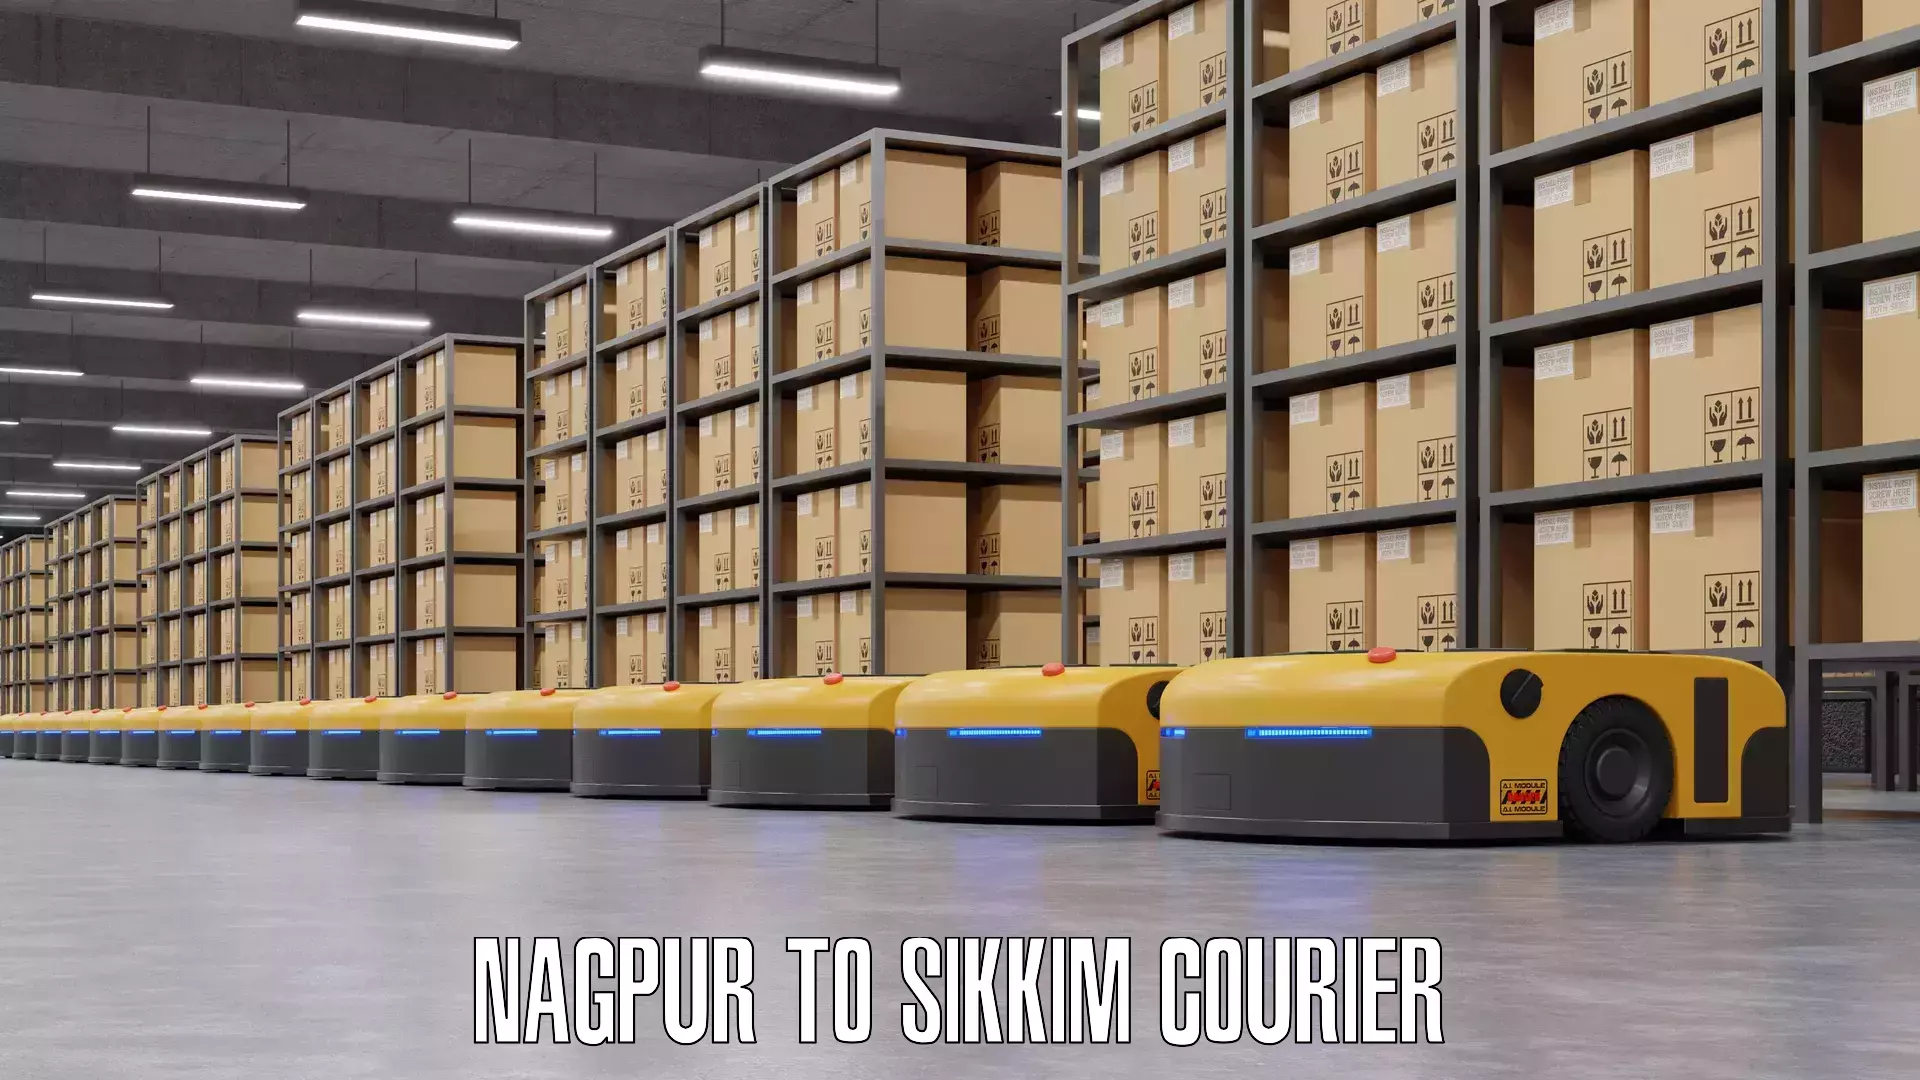 Door-to-door baggage service Nagpur to Sikkim